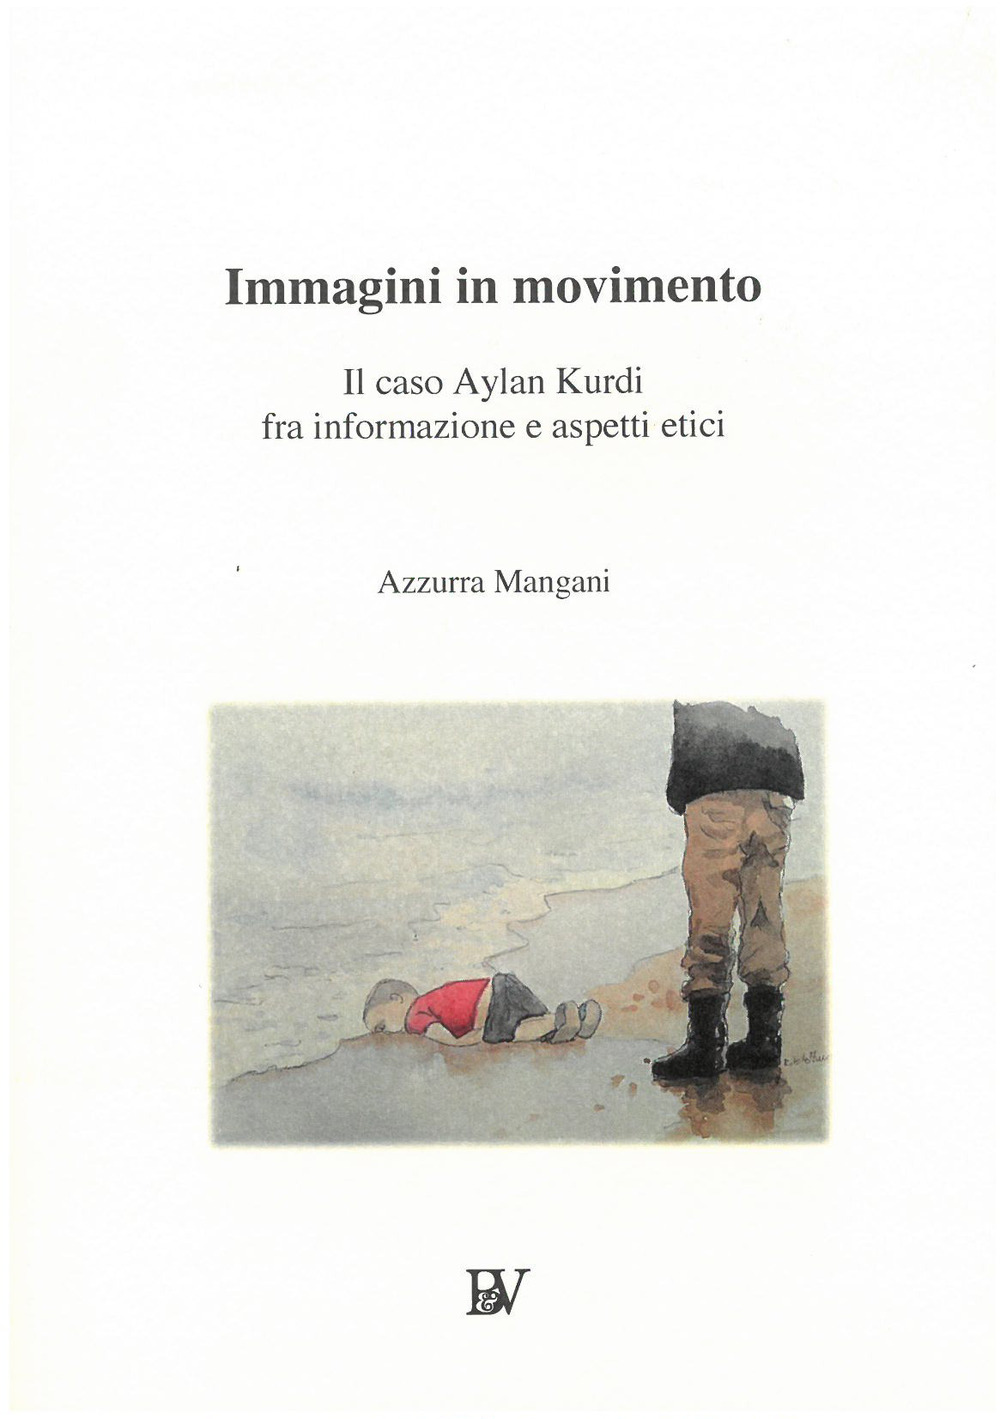 Immagini in movimento. Il caso Aylan Kurdi fra informazione e aspetti etici